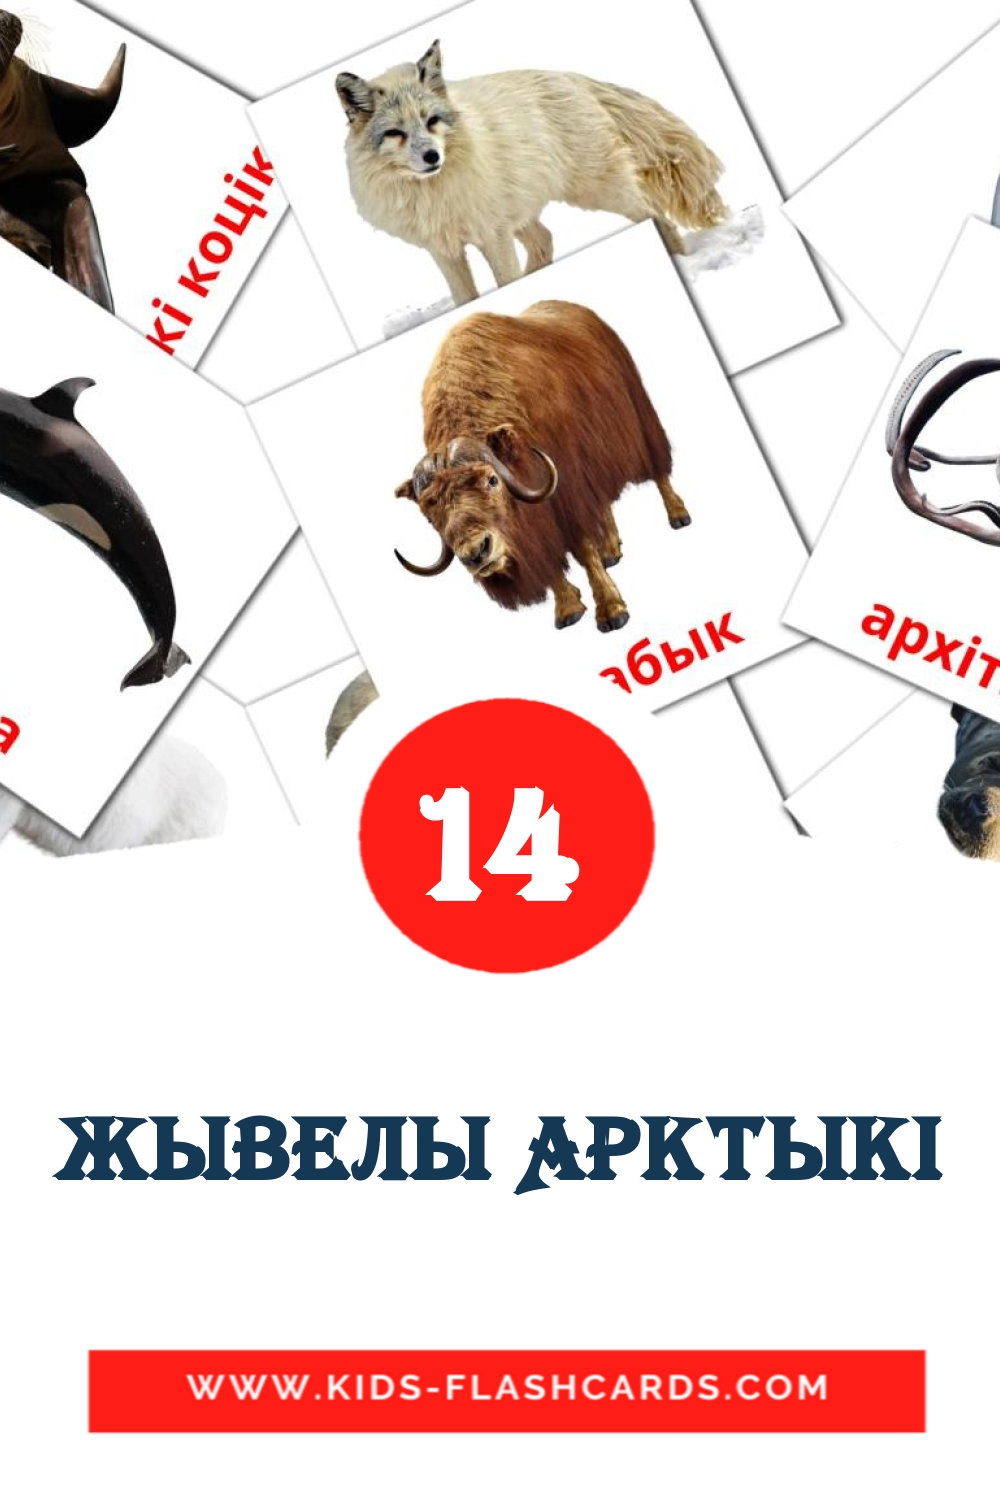 14 Жывелы Арктыкi Bildkarten für den Kindergarten auf Weißrussisch